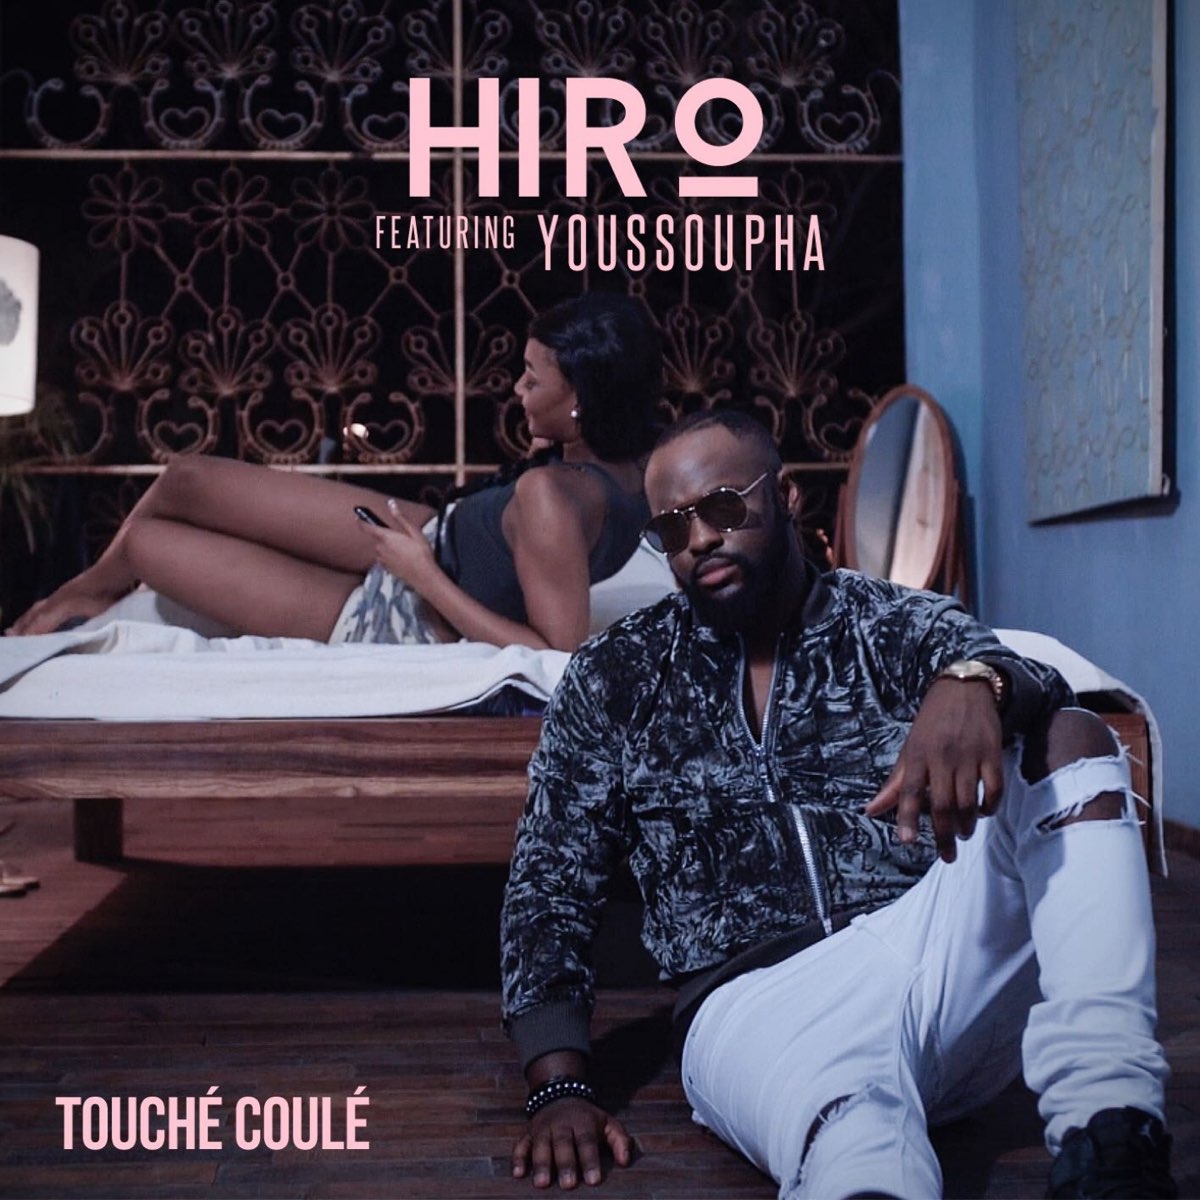 Touché coulé (feat. Youssoupha) - Single - Album by Hiro - Apple Music